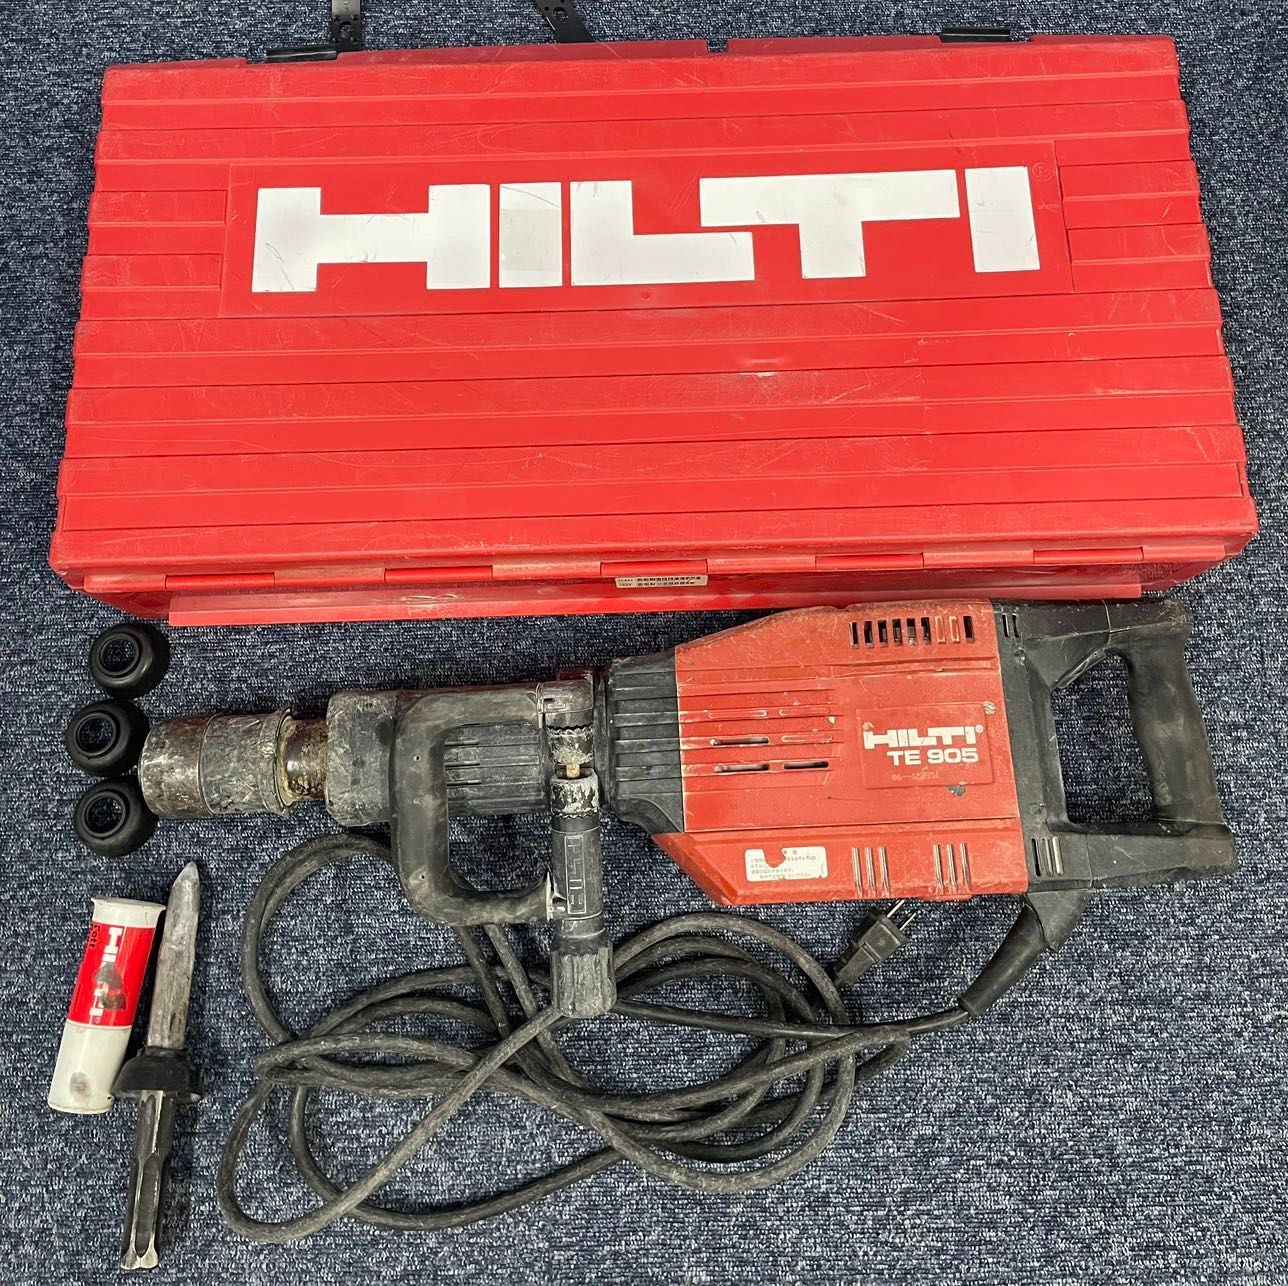 ヒルティ HILTI 電動ハンマー TE905 確認済み 割れた te805 te1000 